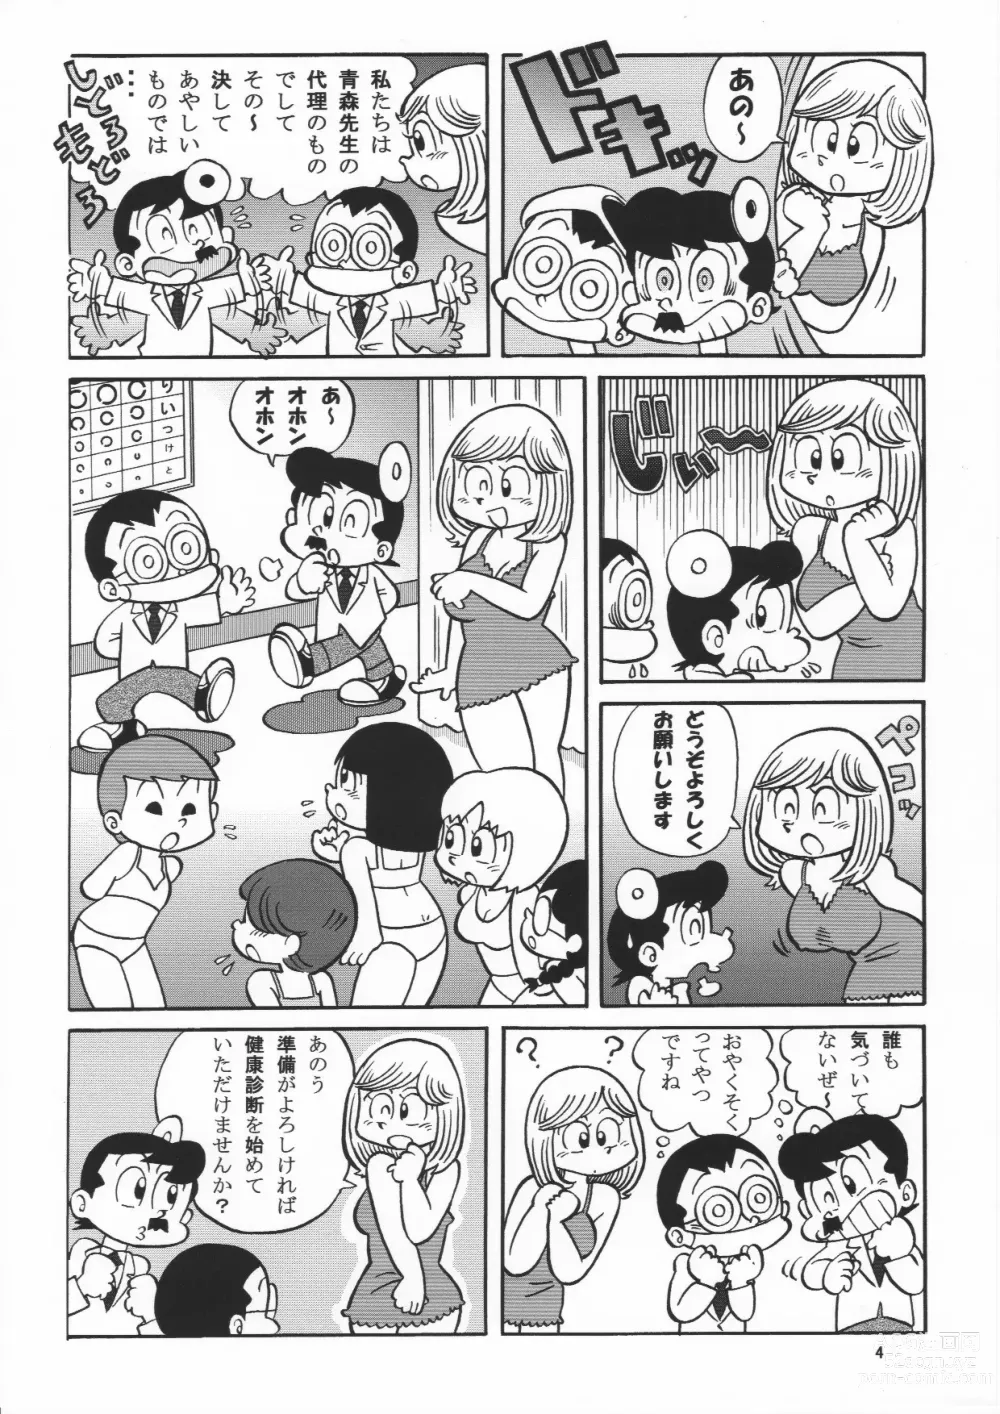 Page 4 of doujinshi (Maicching Machiko Sensei)